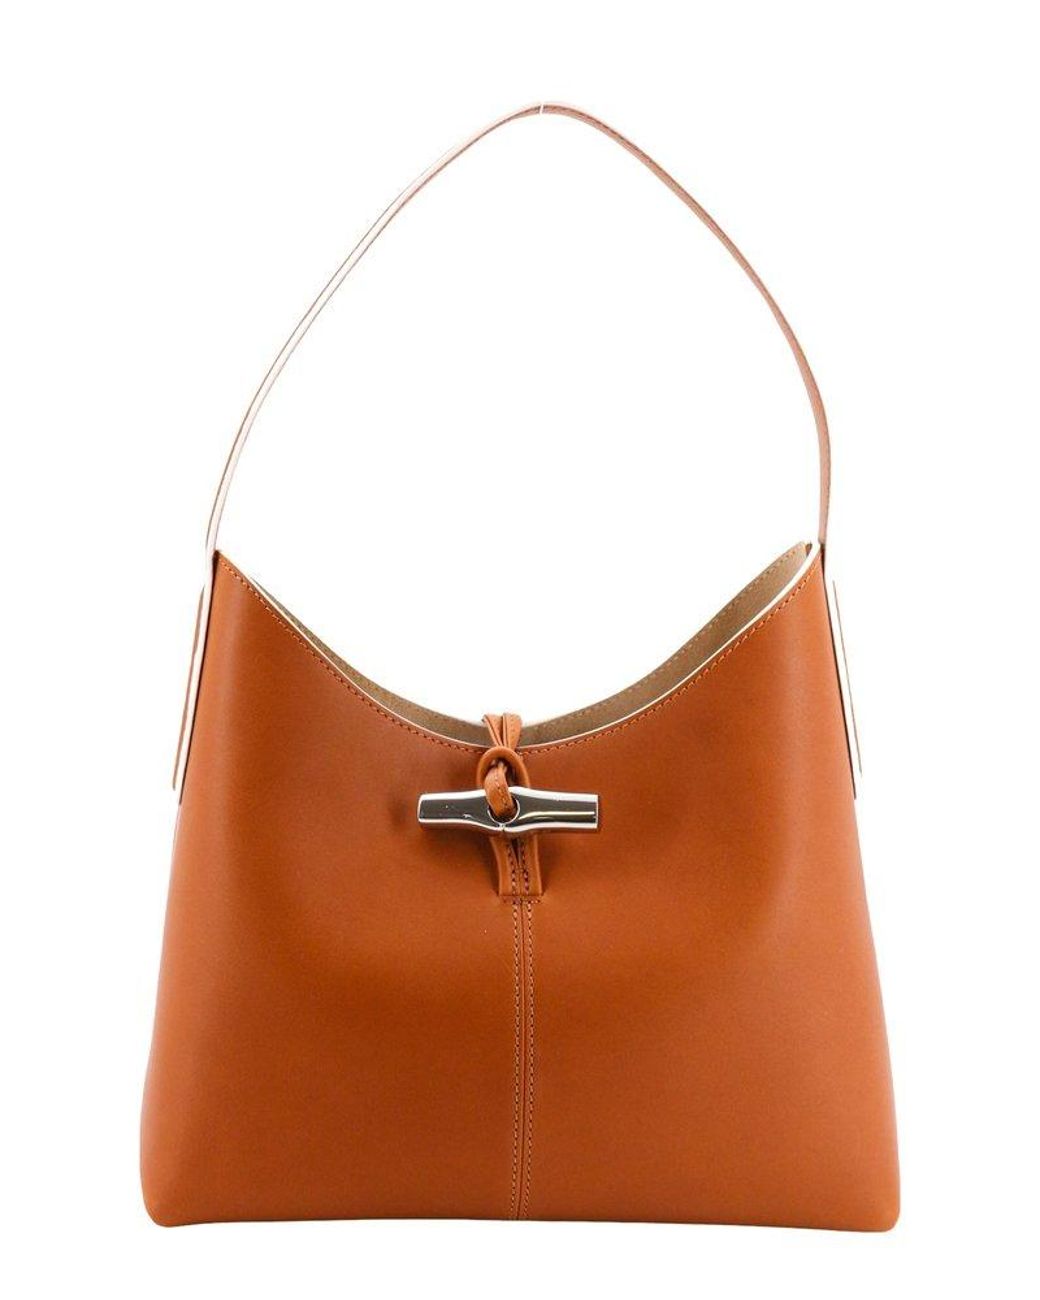 Longchamp Roseau M Hobo Bag in Brown